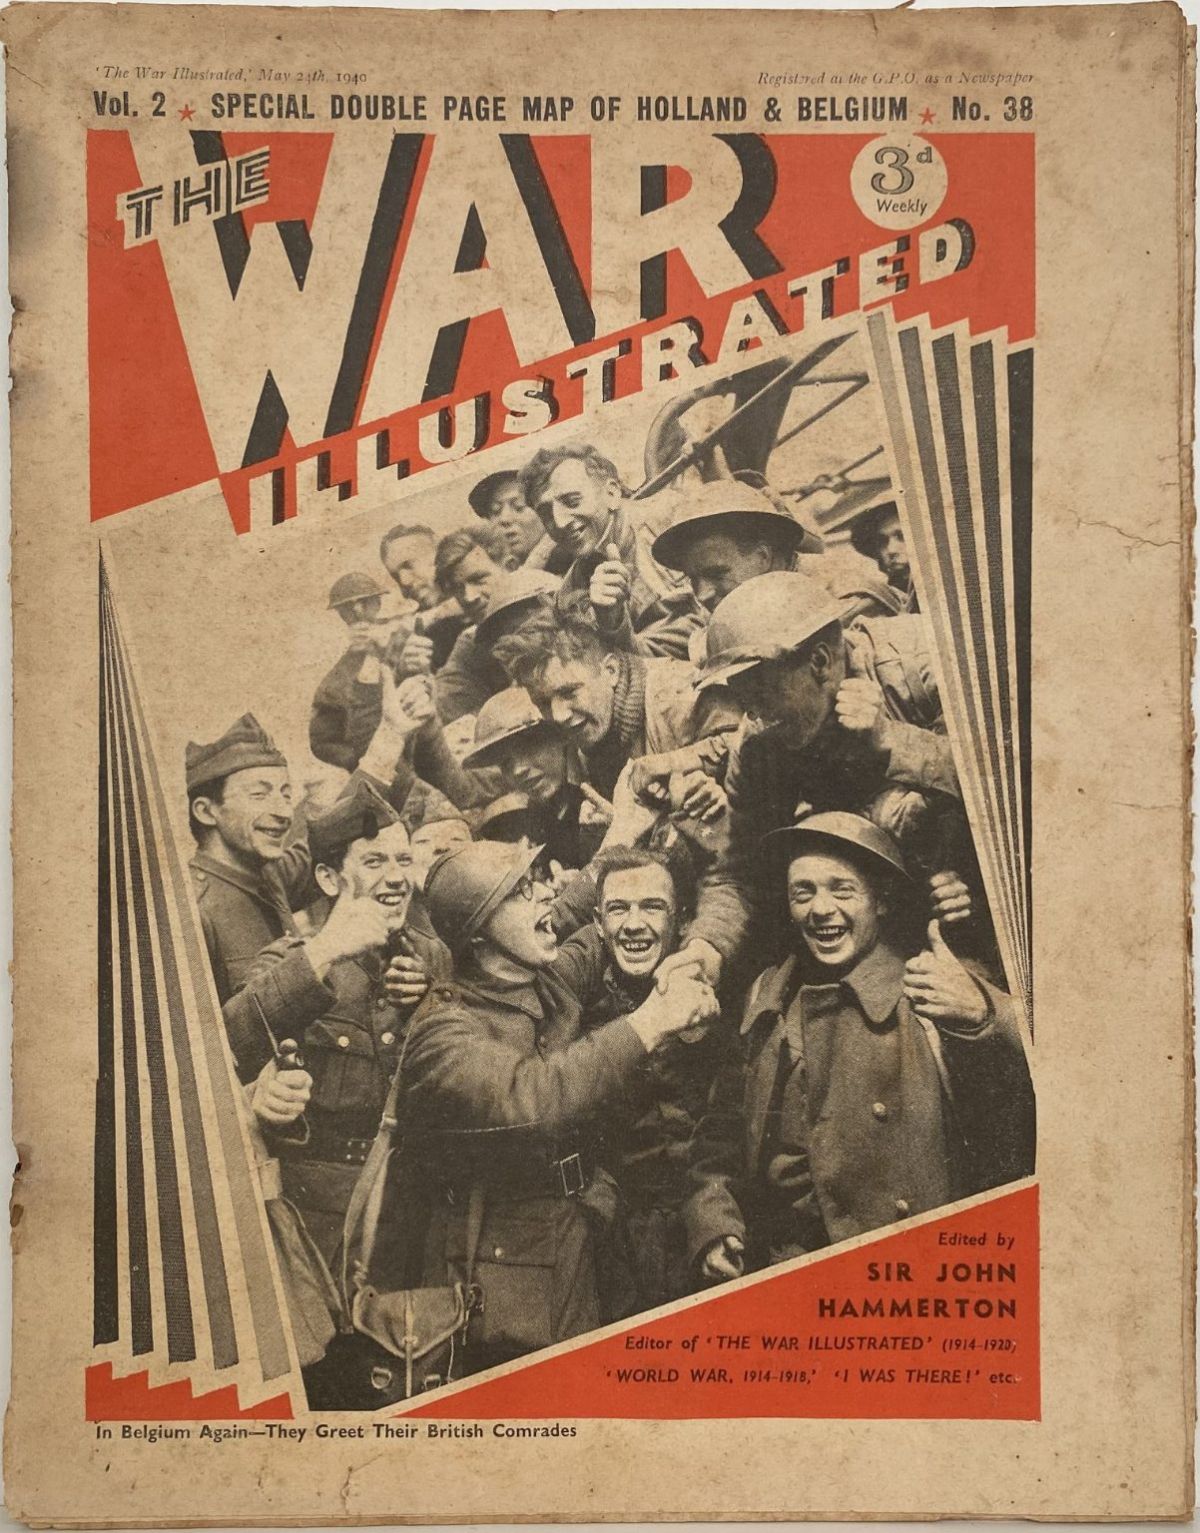 THE WAR ILLUSTRATED - Vol 2, No 38, 24th May 1940